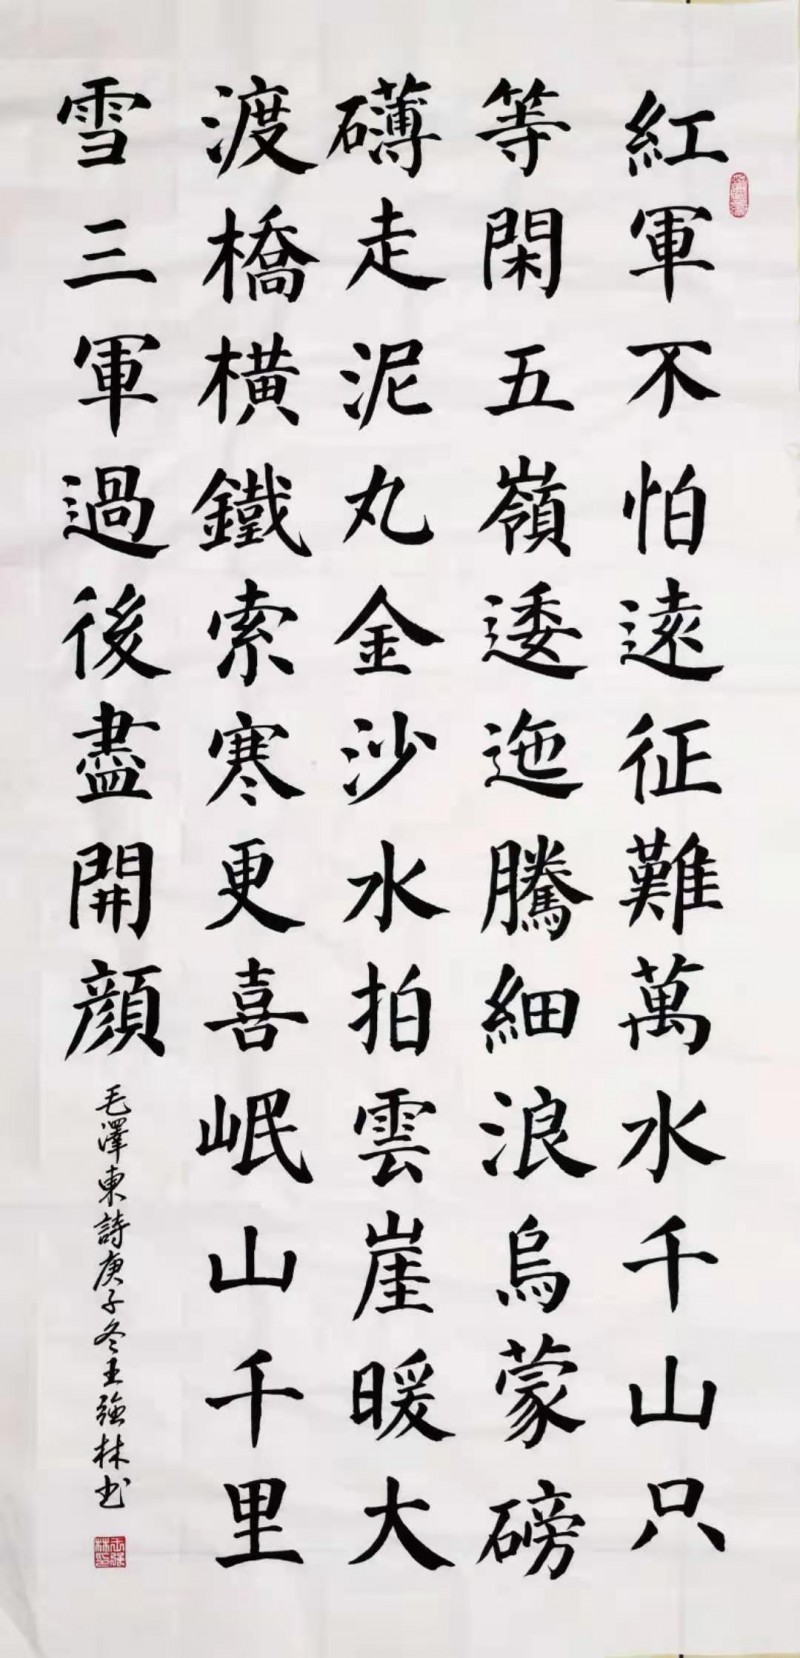 中国楹联学会中宣盛世文化艺术交流中心书画风采展示——王强林